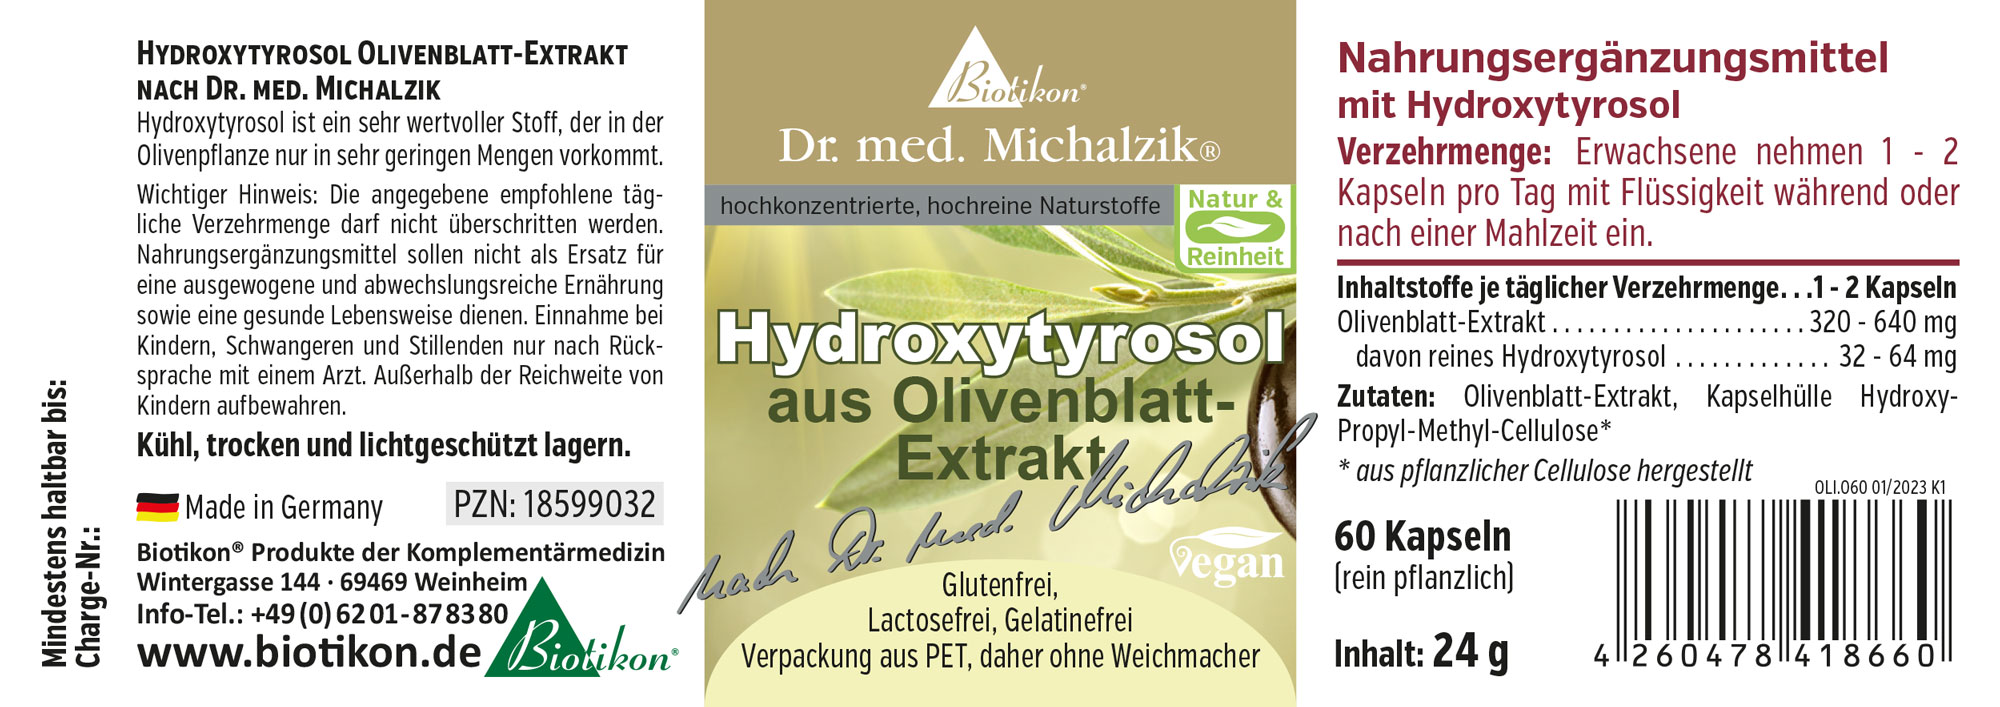 Hydroxytyrosol Olivenblatt-Extrakt